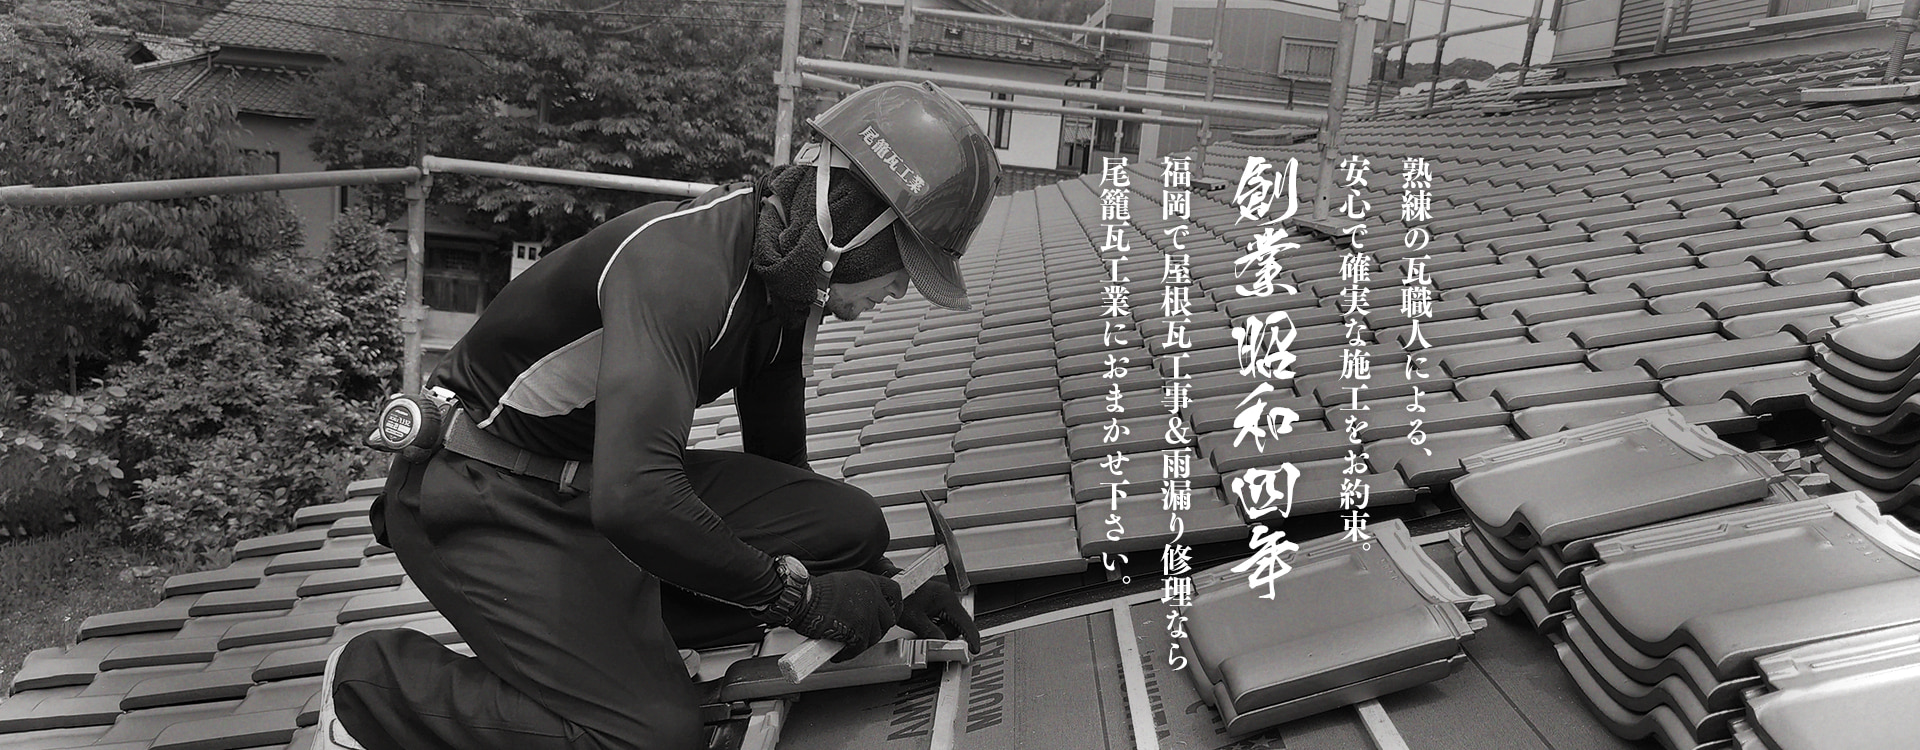 熟練の瓦職人による、安心で確実な施工をお約束。福岡で屋根工事＆雨漏り修理なら創業1929年の尾籠瓦工業におまかせ下さい。